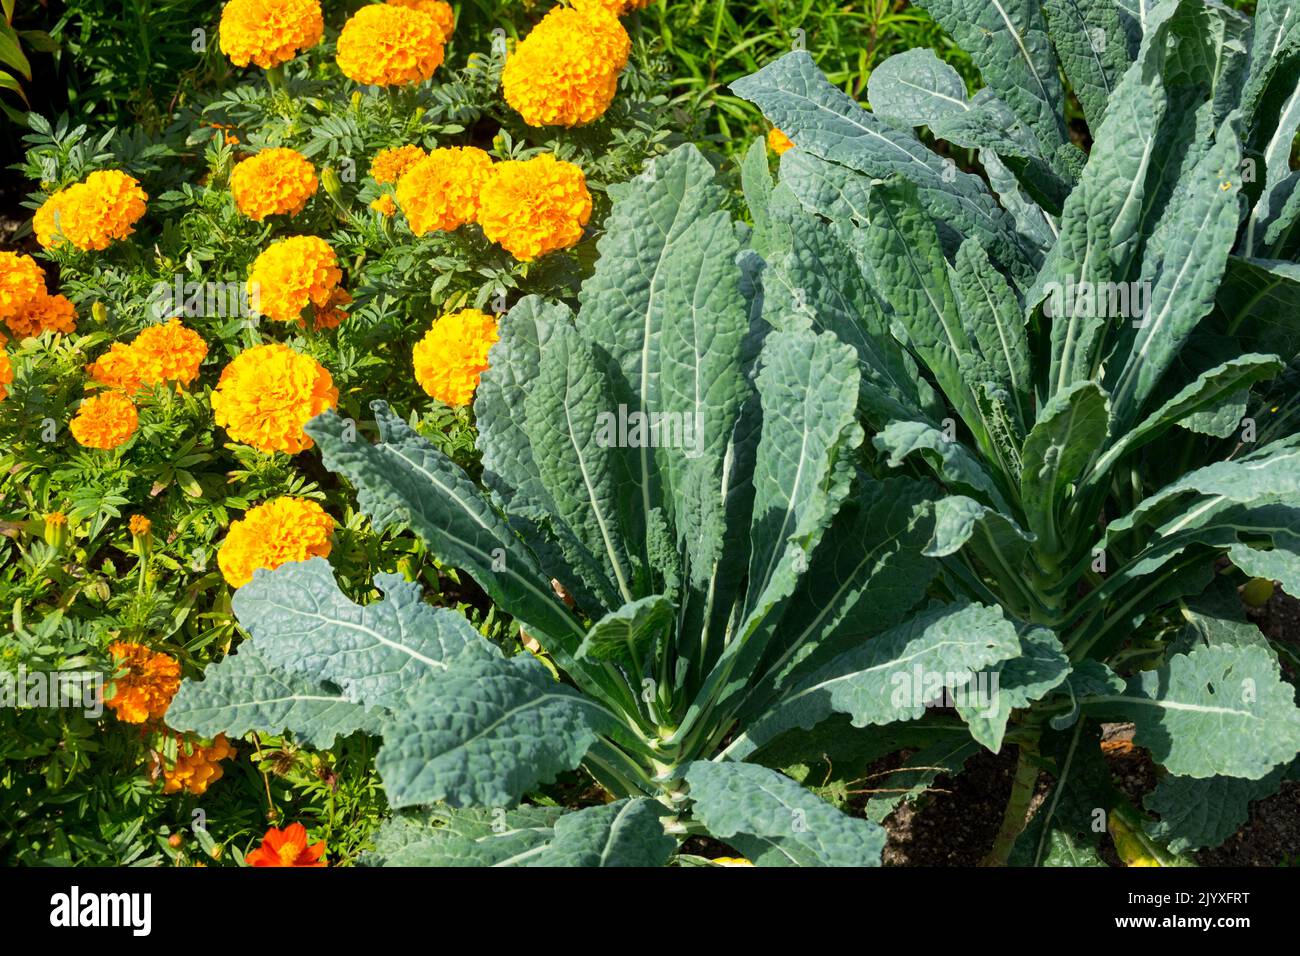 Brassica oleracea acephala, marigot africain, Tagetes, Kale, été, Saison, lit de fleurs Banque D'Images